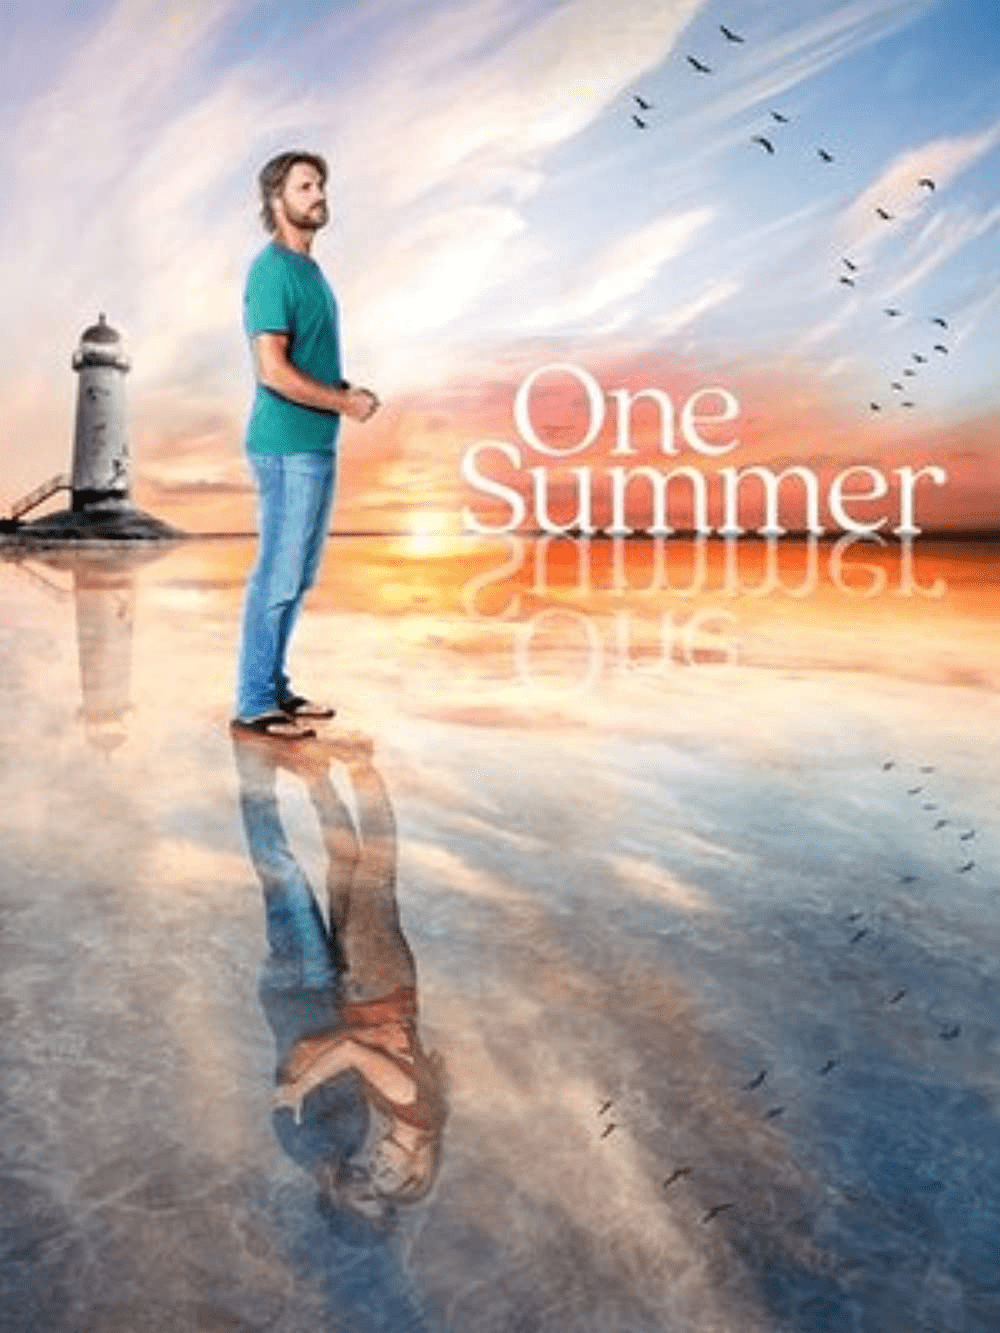 One Summer: Todo lo que debes saber sobre un verano antes de ver - 3 - julio 25, 2022